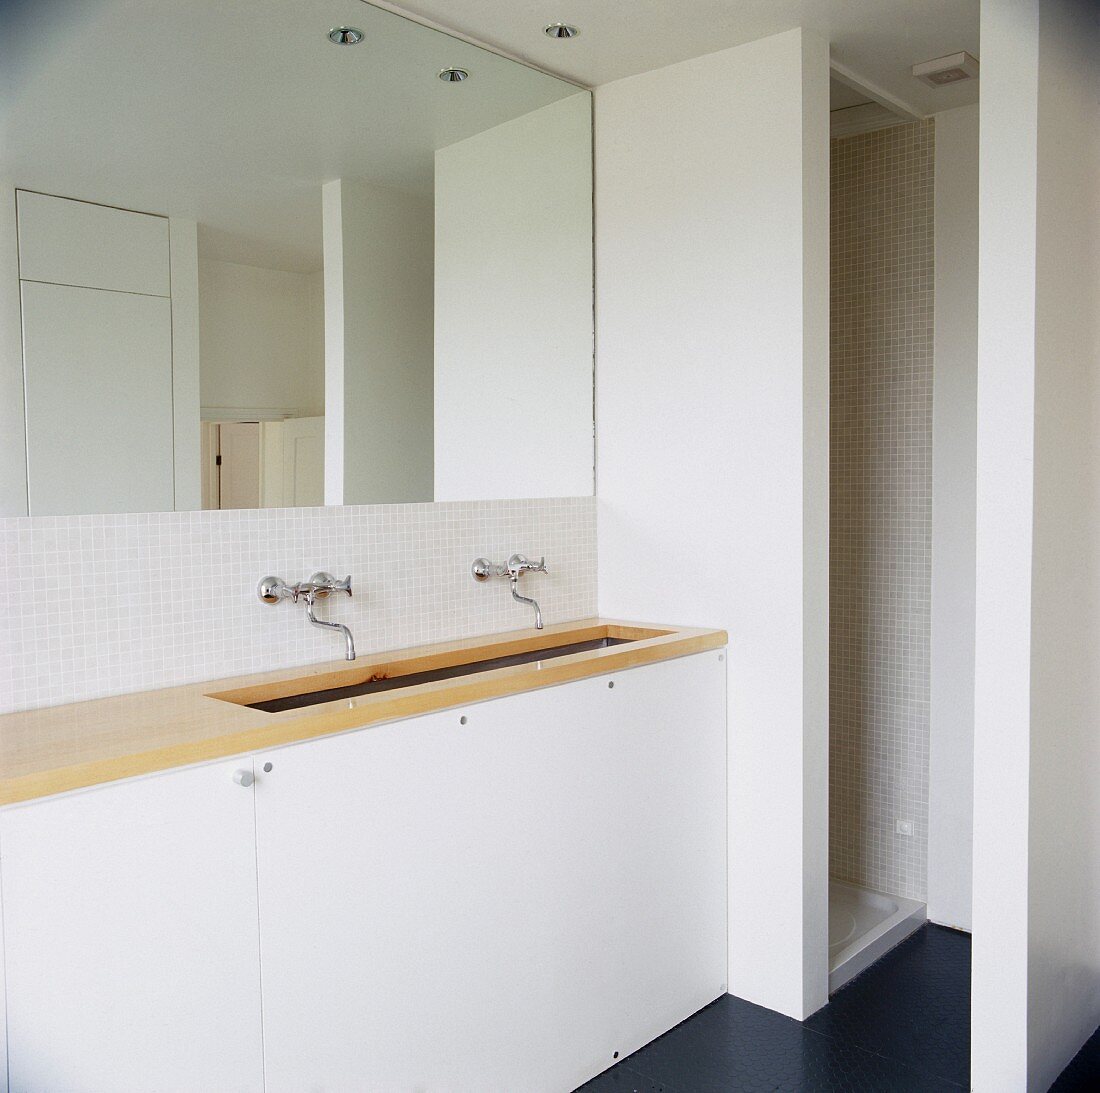 Schlichtes weisses Badezimmer mit heller Holzplatte auf Waschtisch vor vollflächigem Wandspiegel